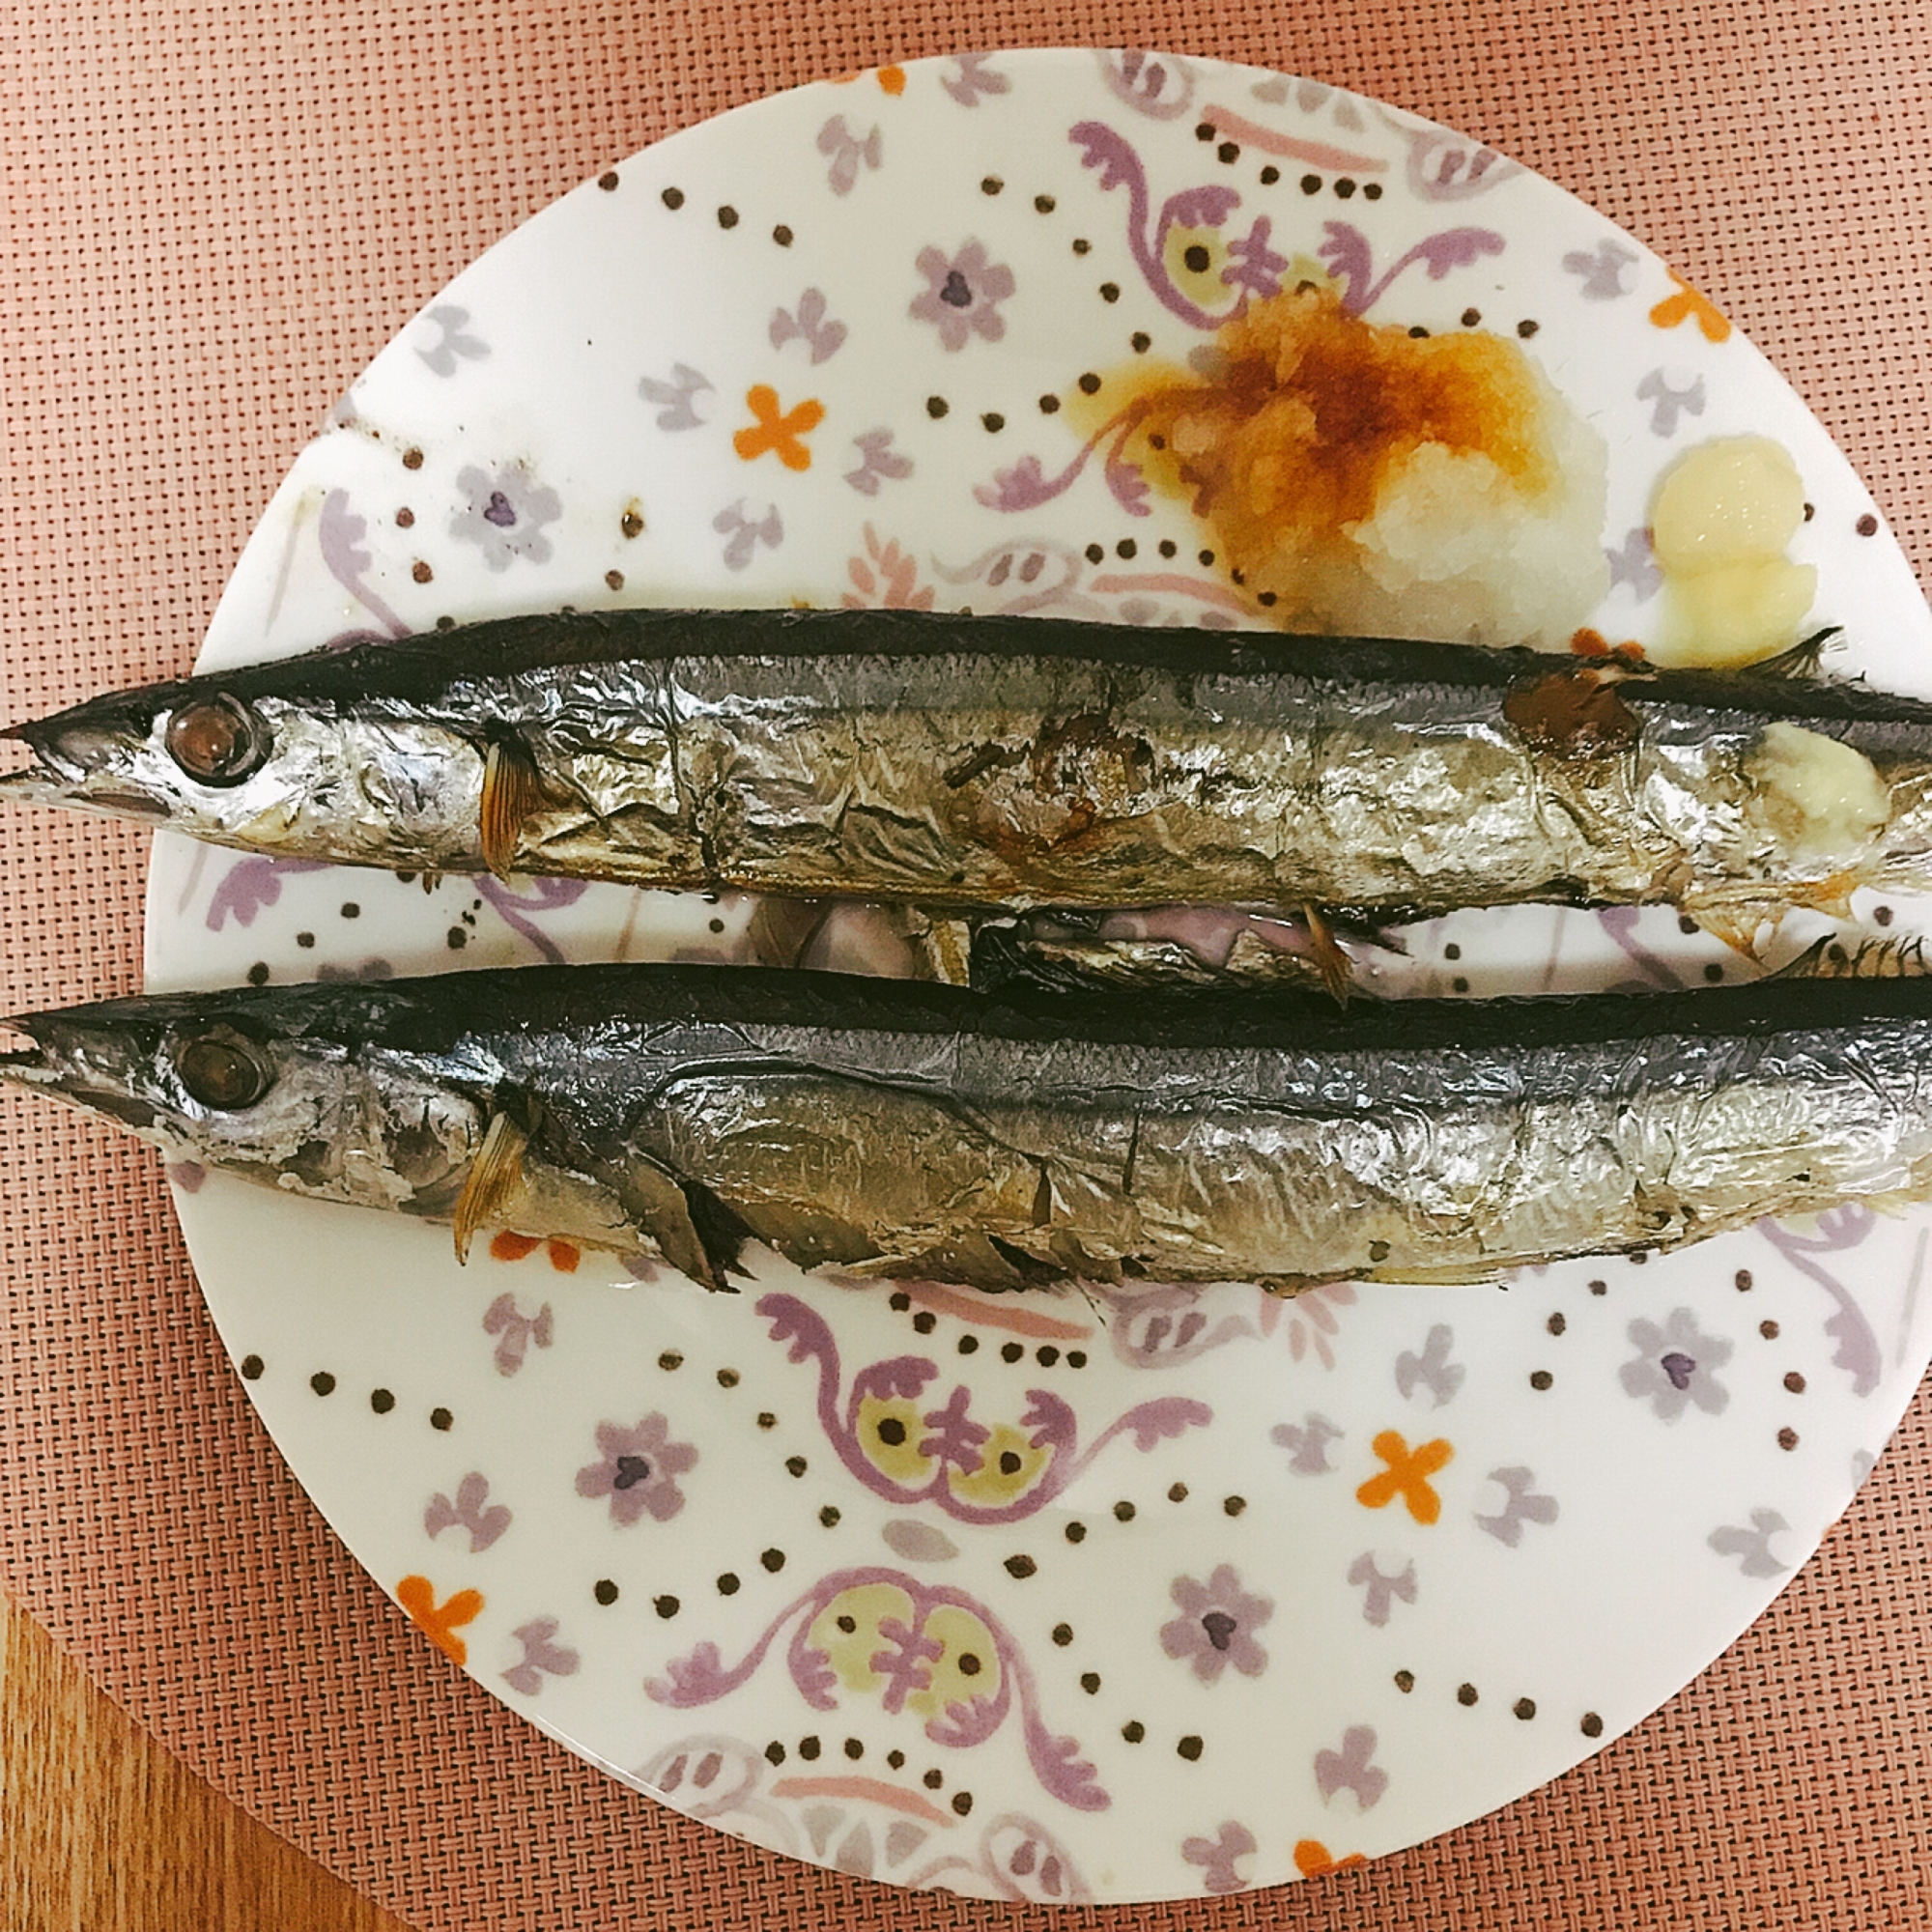 秋刀魚を焼いて食べよう〜にんにくと生姜を添えて〜